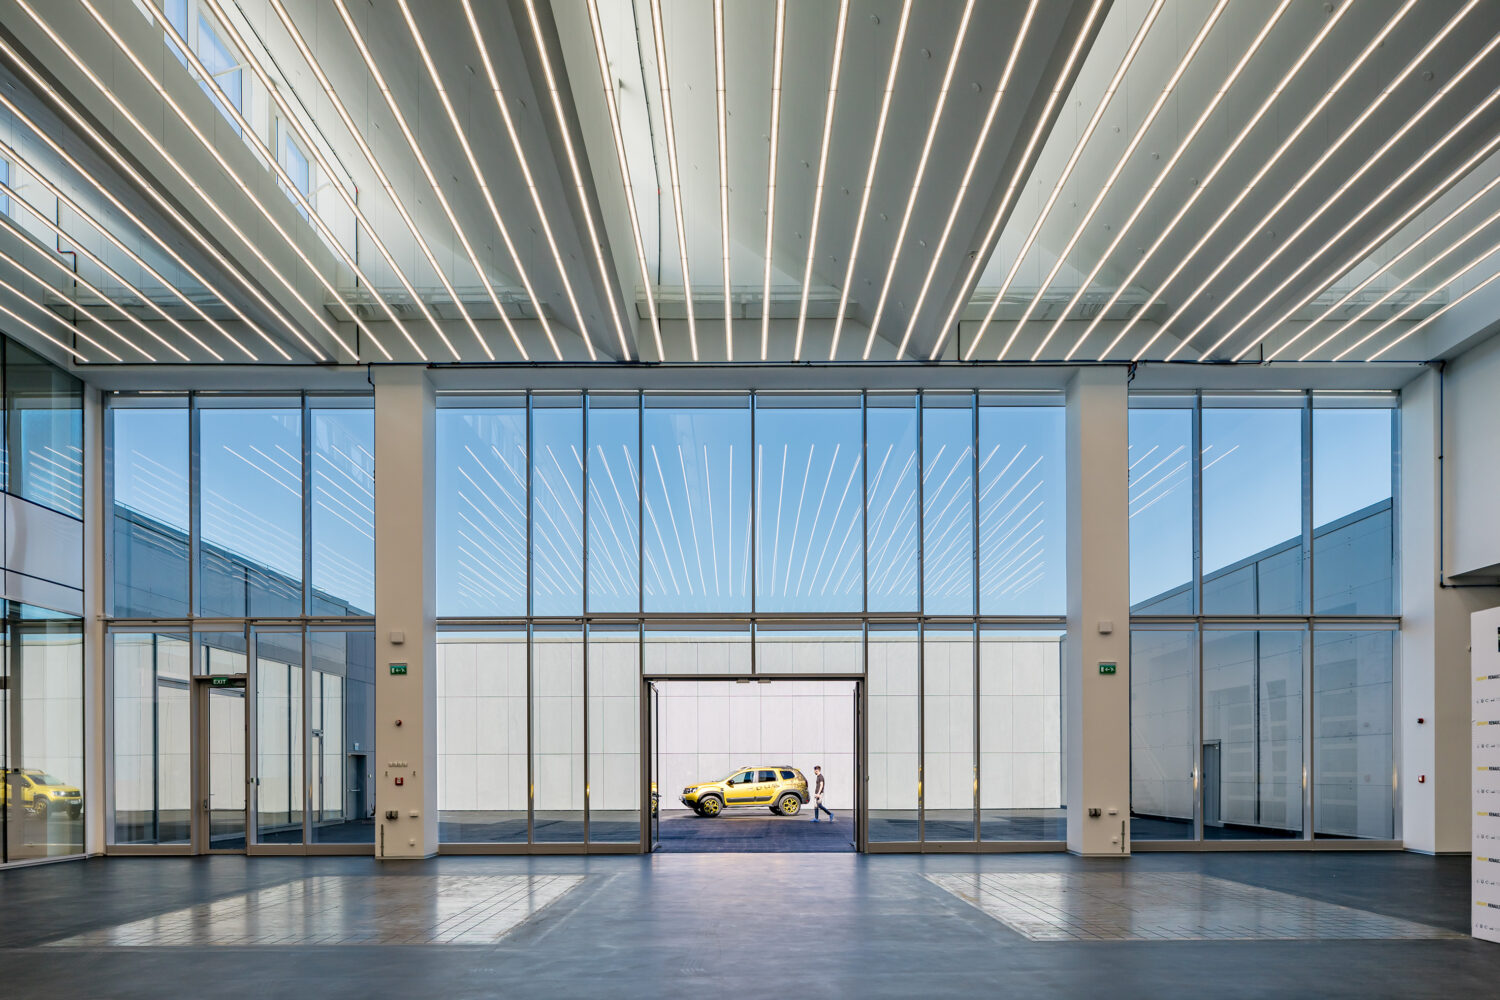 2019 - Le nouveau centre Renault Bucharest Connected